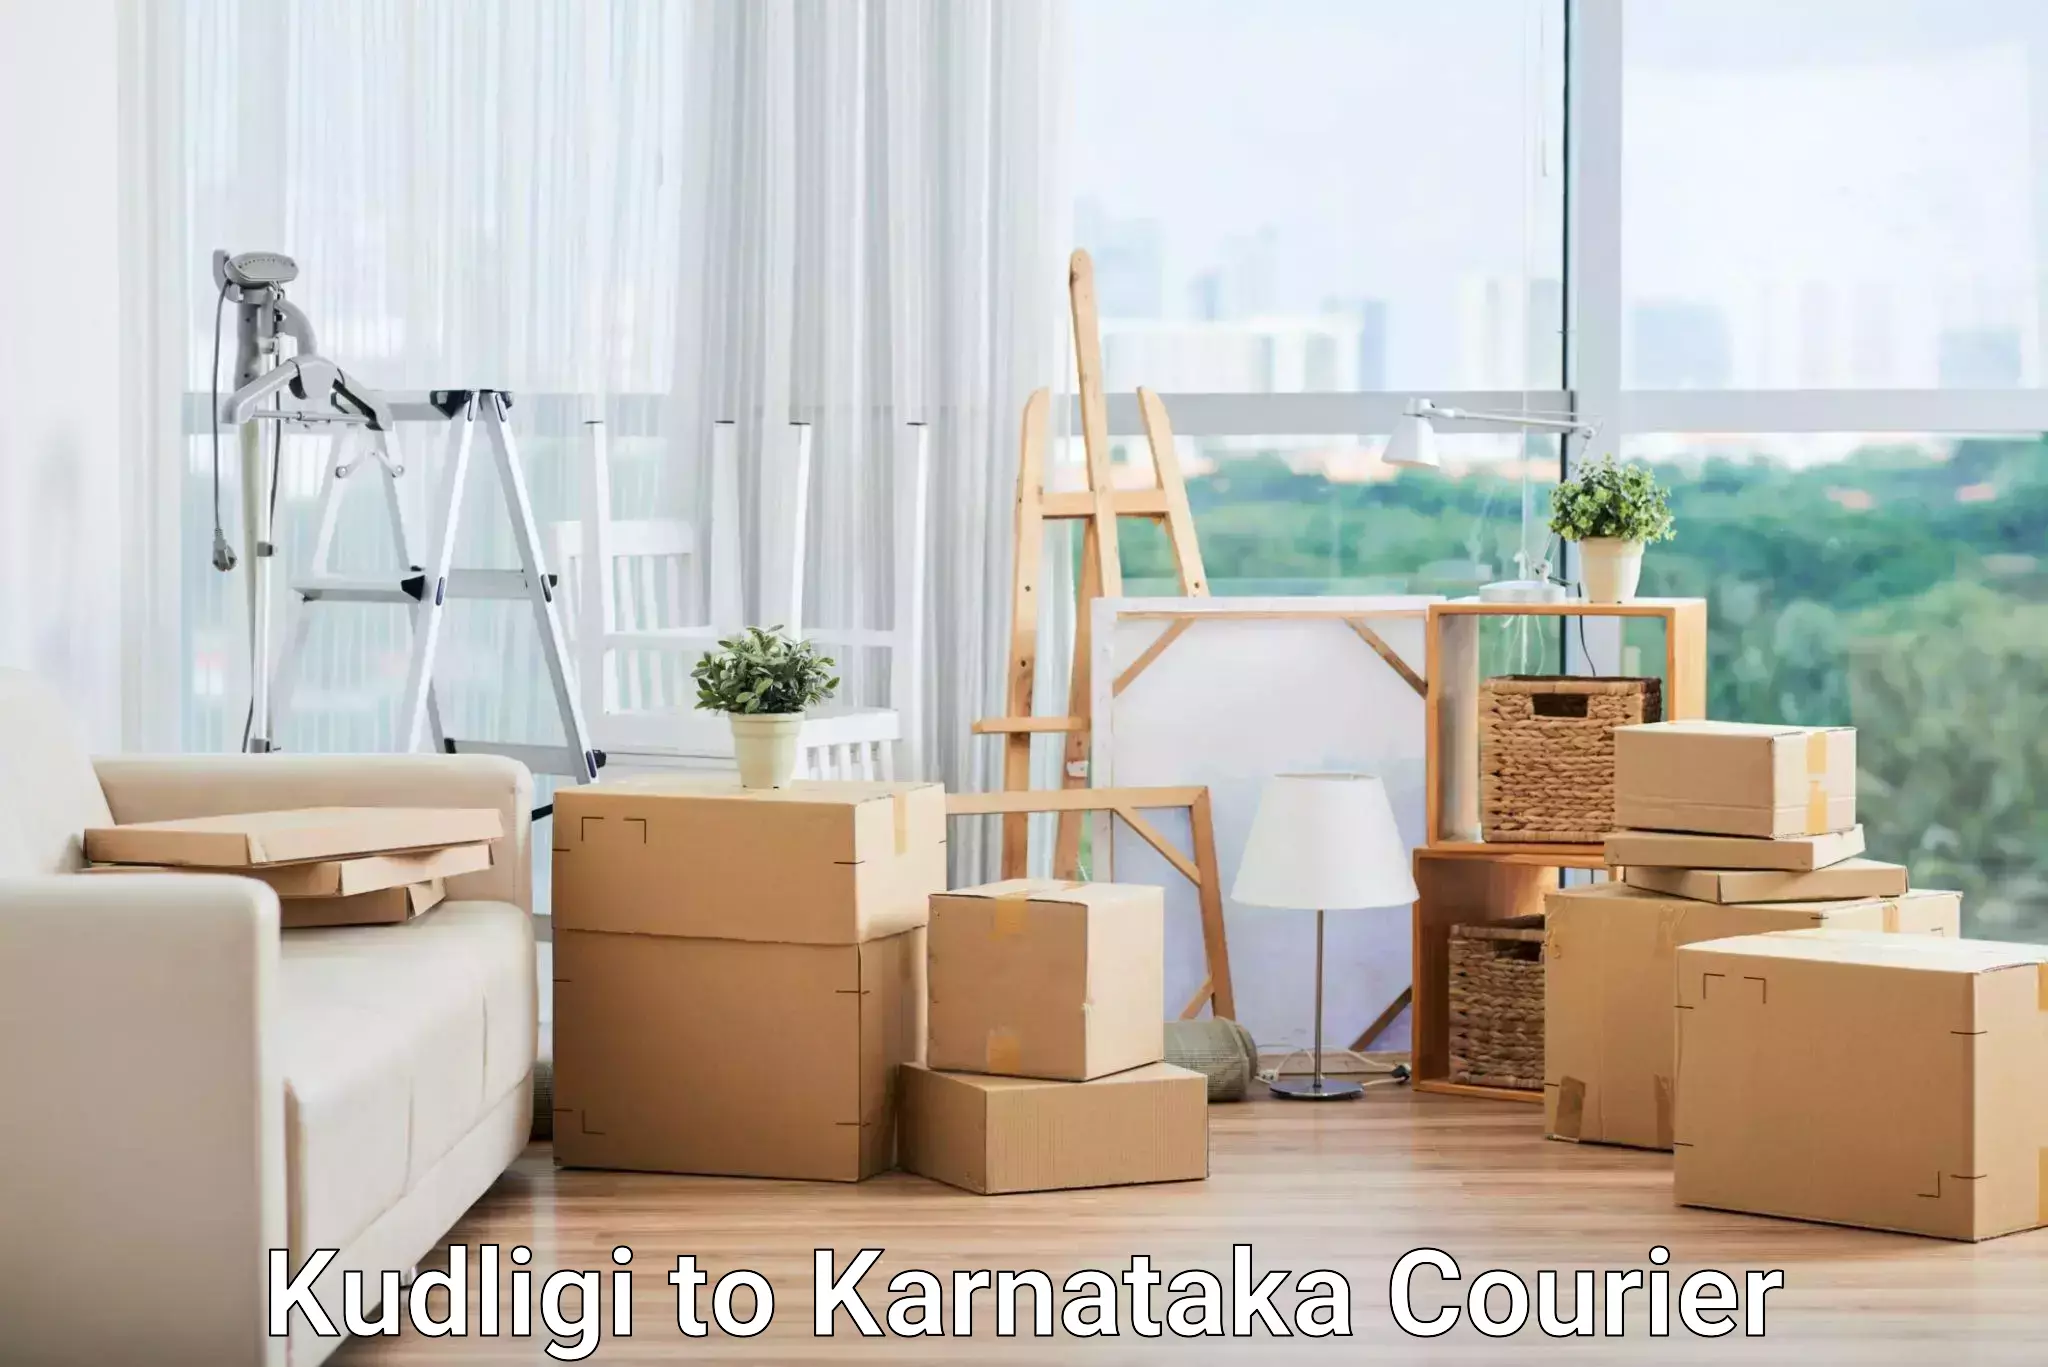 Innovative shipping solutions Kudligi to Karnataka